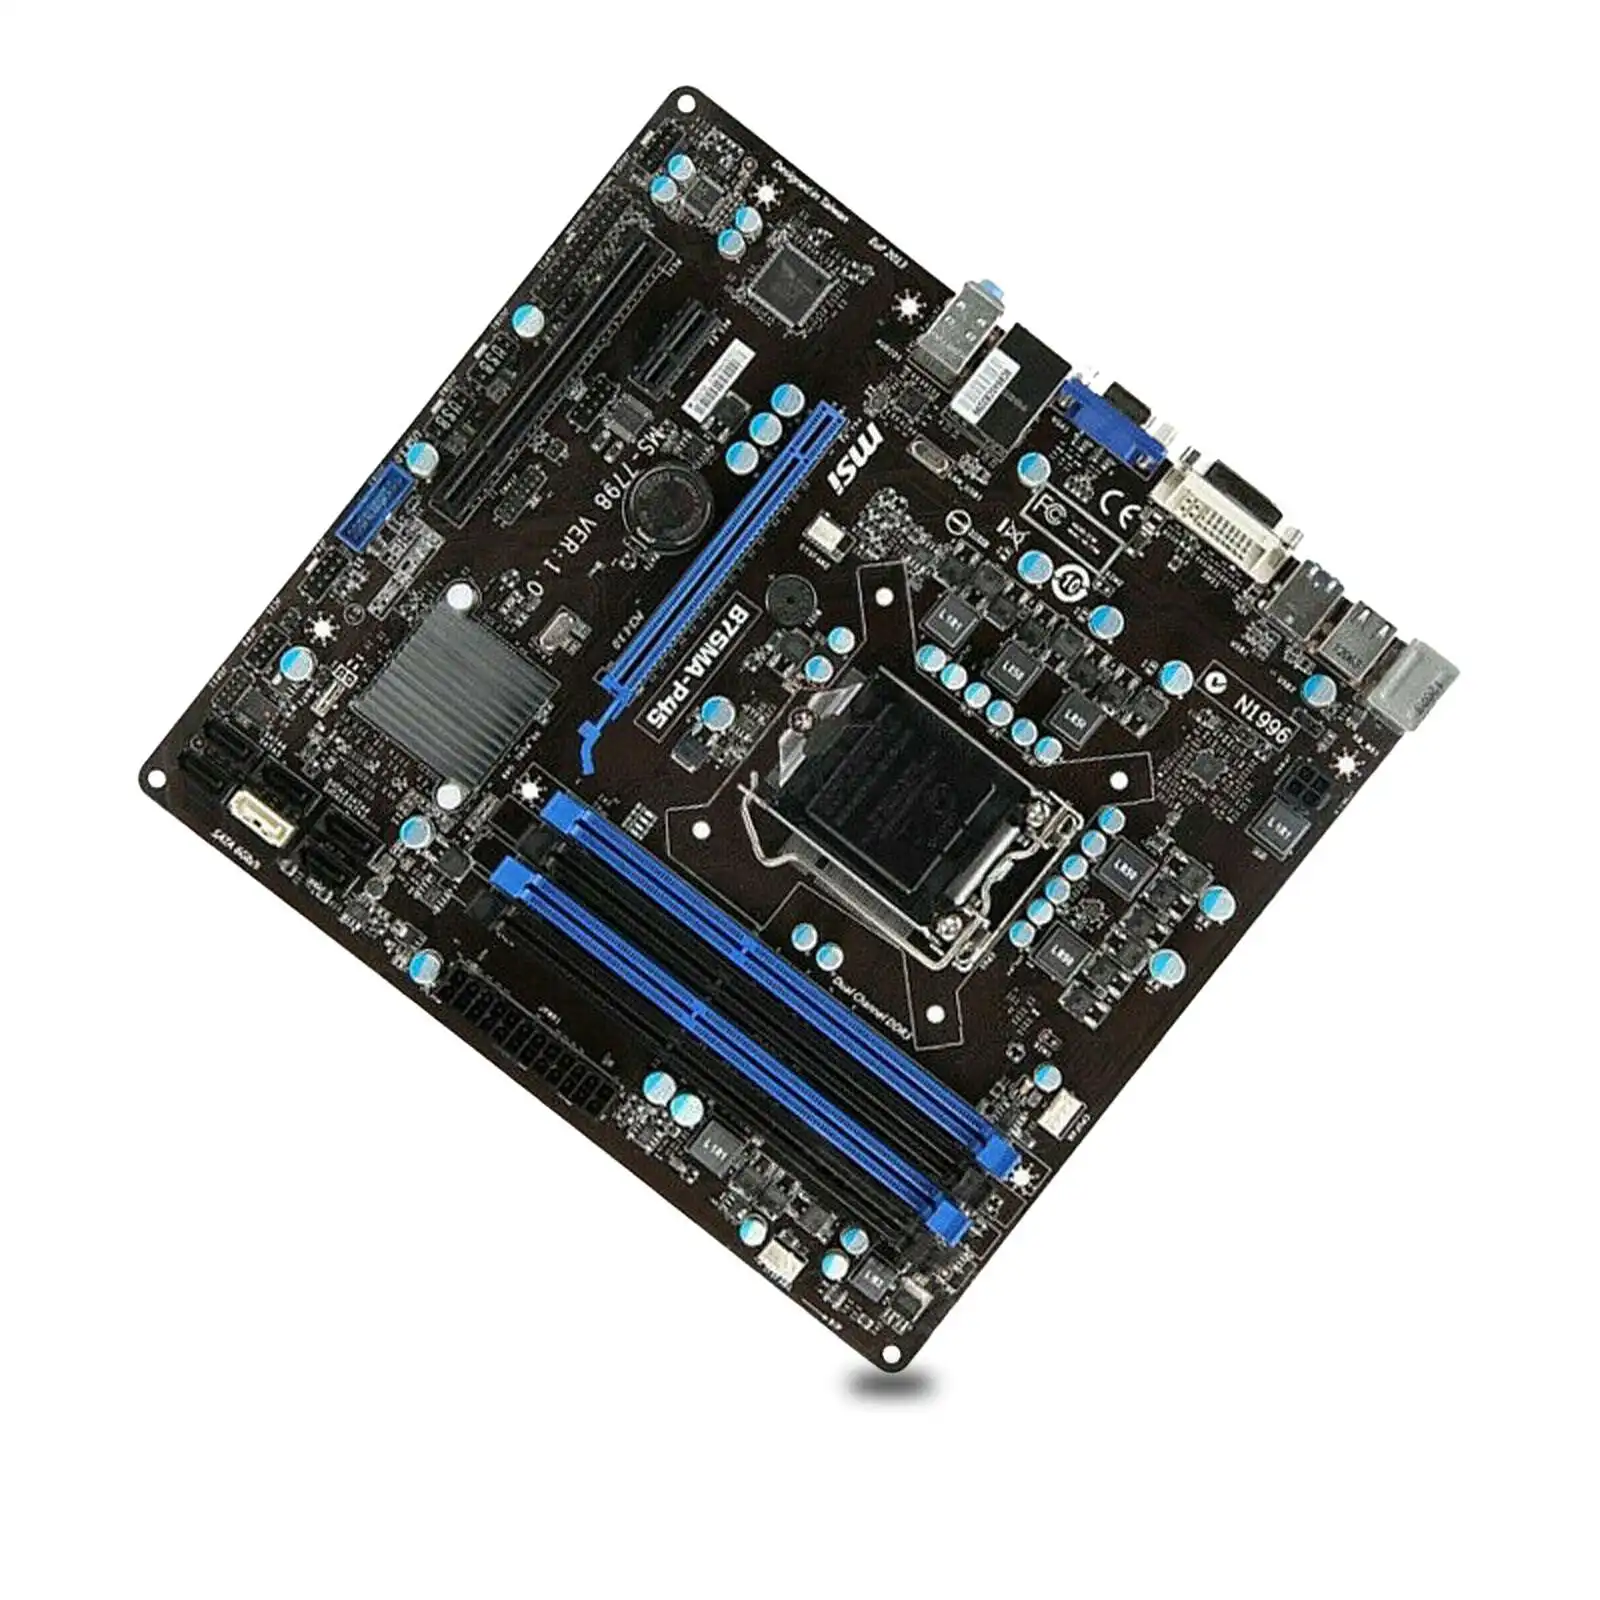 

B75MA-P45 MS-7798 гнездо материнской платы LGA 1155 Экспресс-DDR3 для 3rd поколение Intel Core i7 / i5 / i3 процессоры Intel компьютер